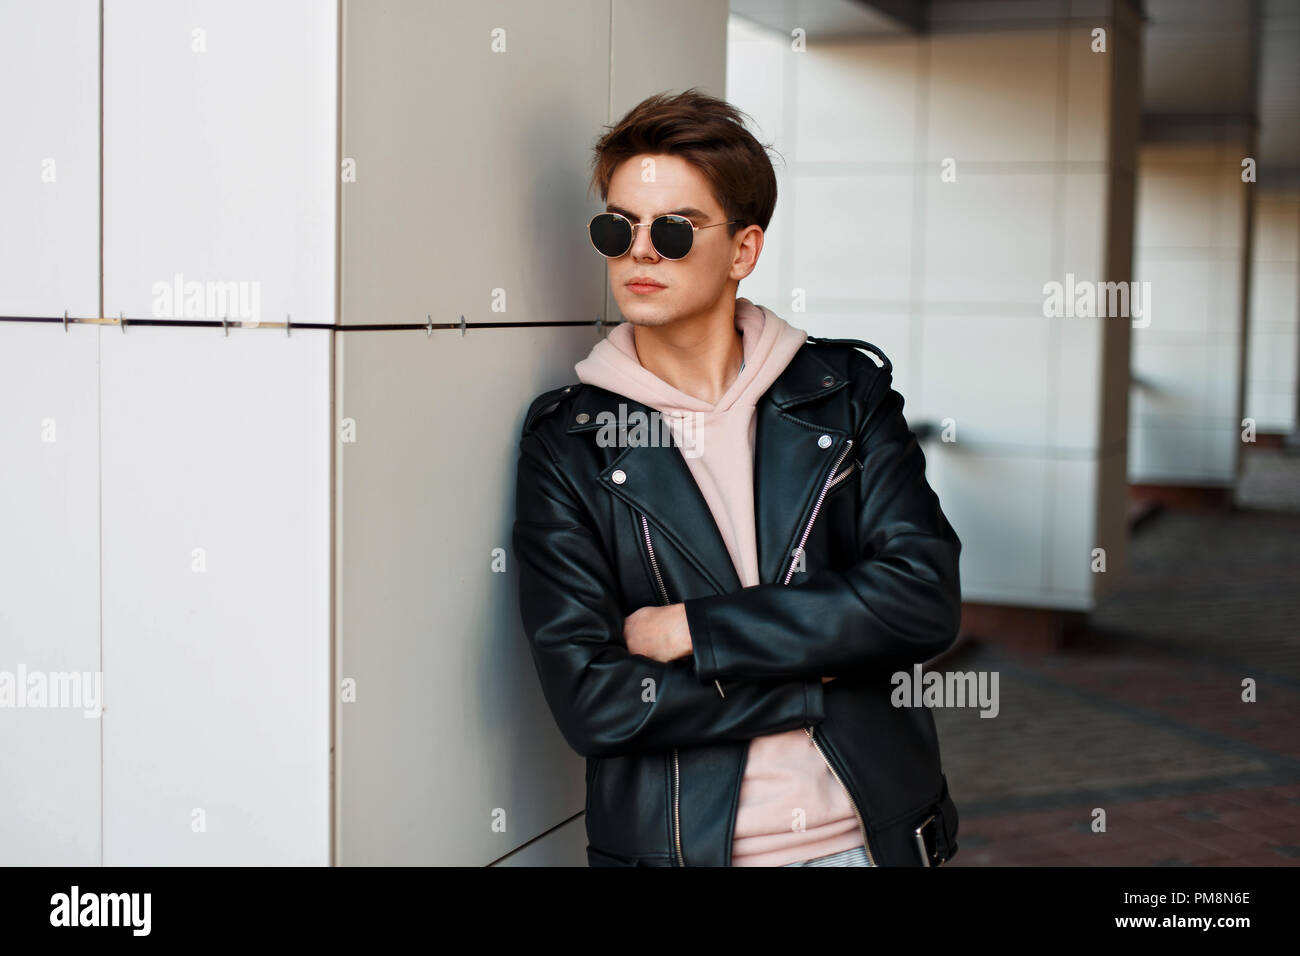 Beau jeune mec avec des lunettes de soleil dans un quartier à la mode veste  de marque se tient près d'un mur blanc Photo Stock - Alamy